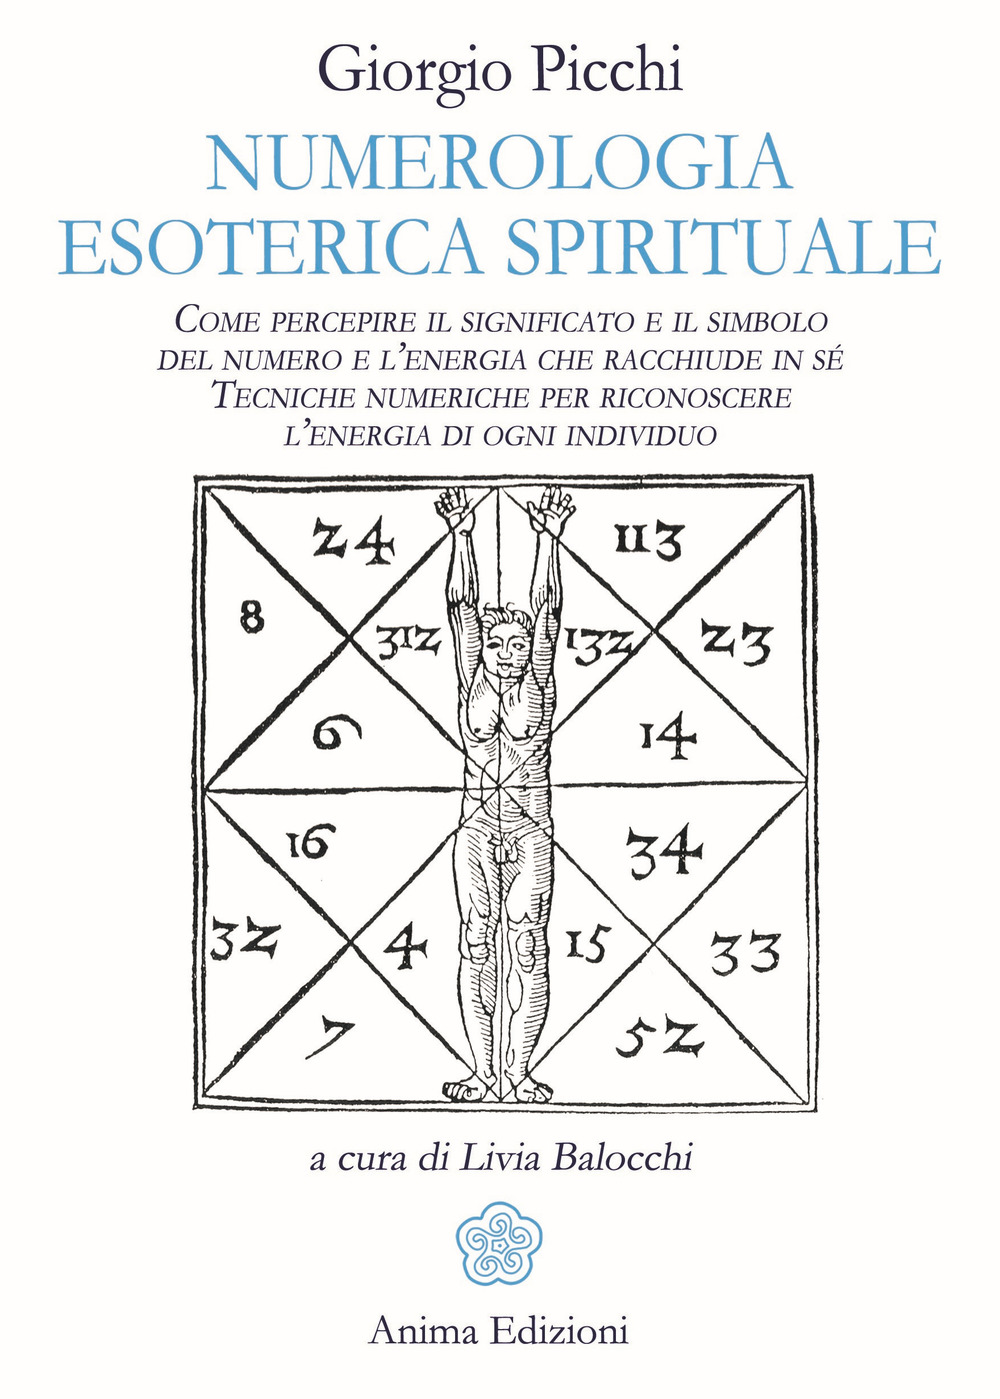 Numerologia esoterica e spirituale. Come percepire il significato e il simbolo del numero e l'energia che racchiude in sé. Tecniche numeriche per riconoscere l'energia di ogni individuo